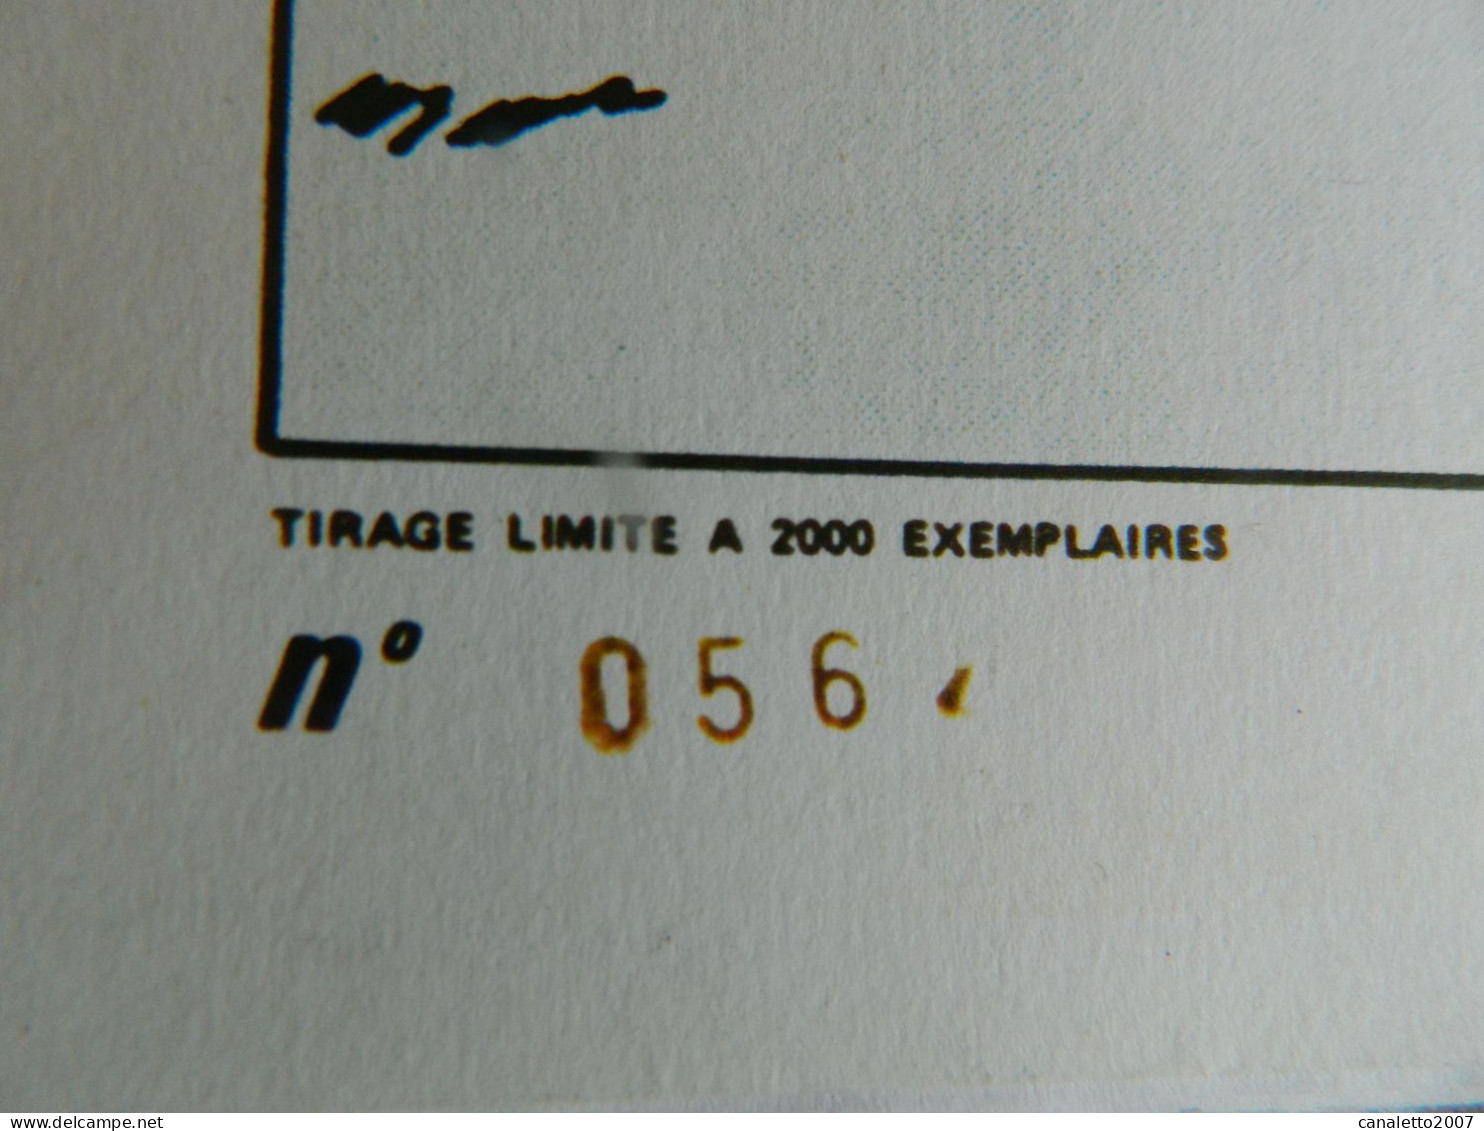 TINTIN: LE PETIT VINGTCINQUIEME - N°  SUR 2000 EXEMPLAIRES--1983 RARE PASTICHE - Hergé